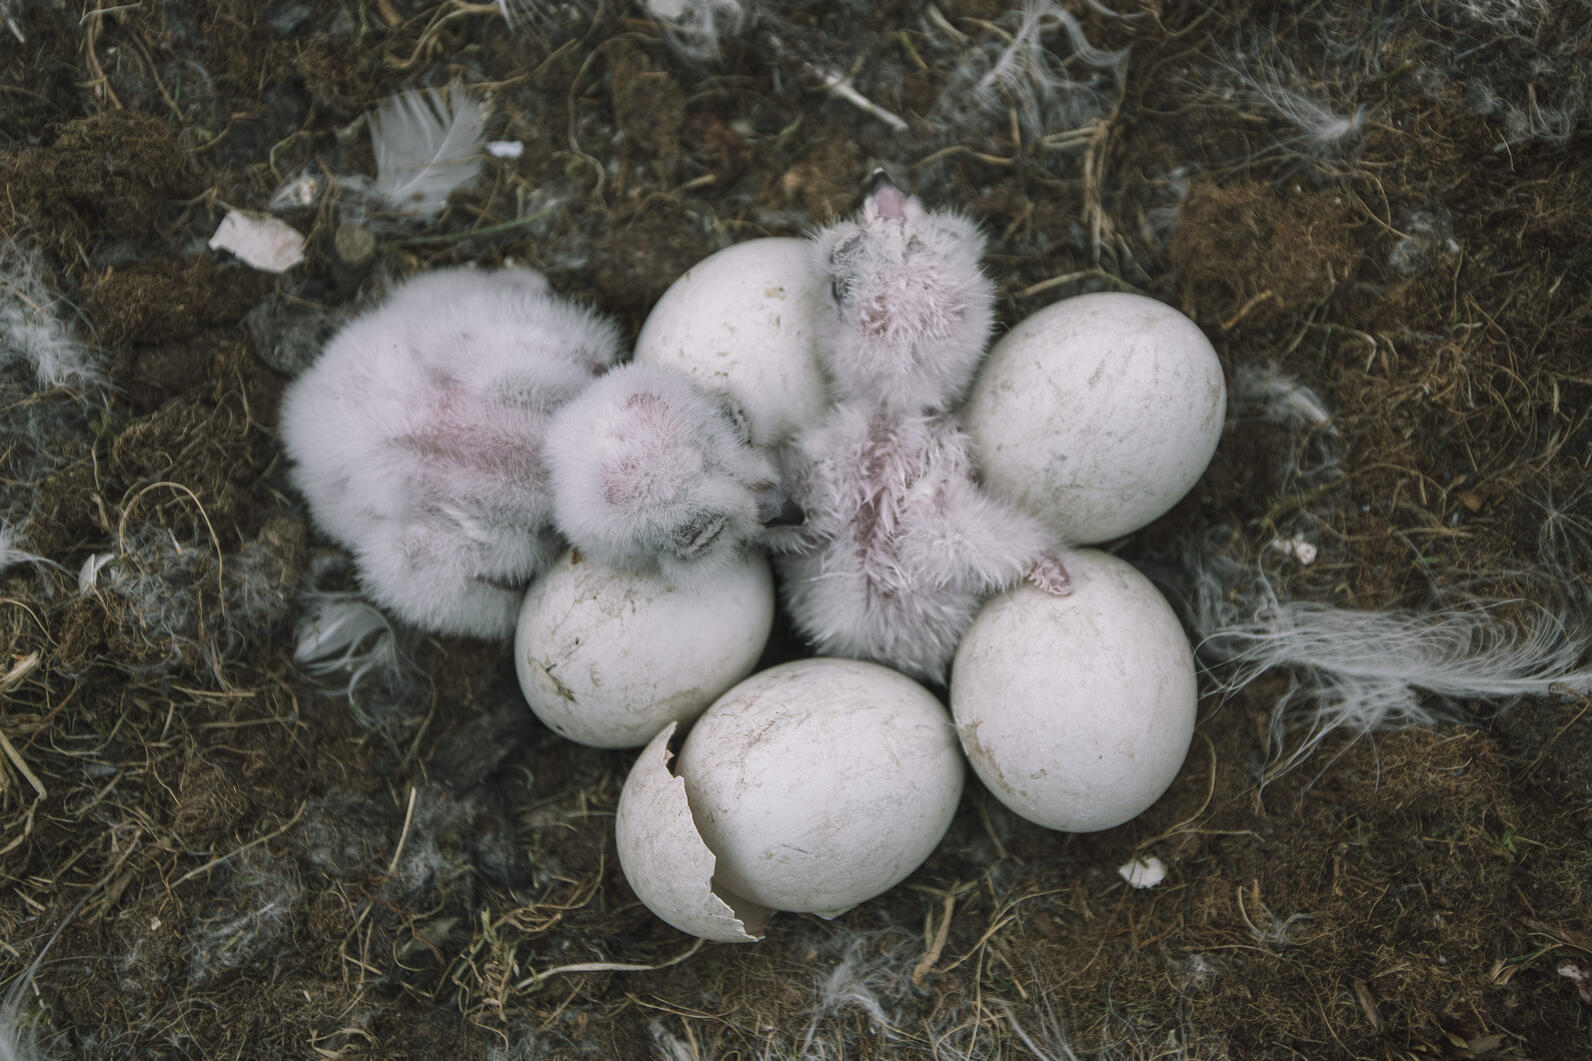 Baby Snowy Owls hatching in ground nest